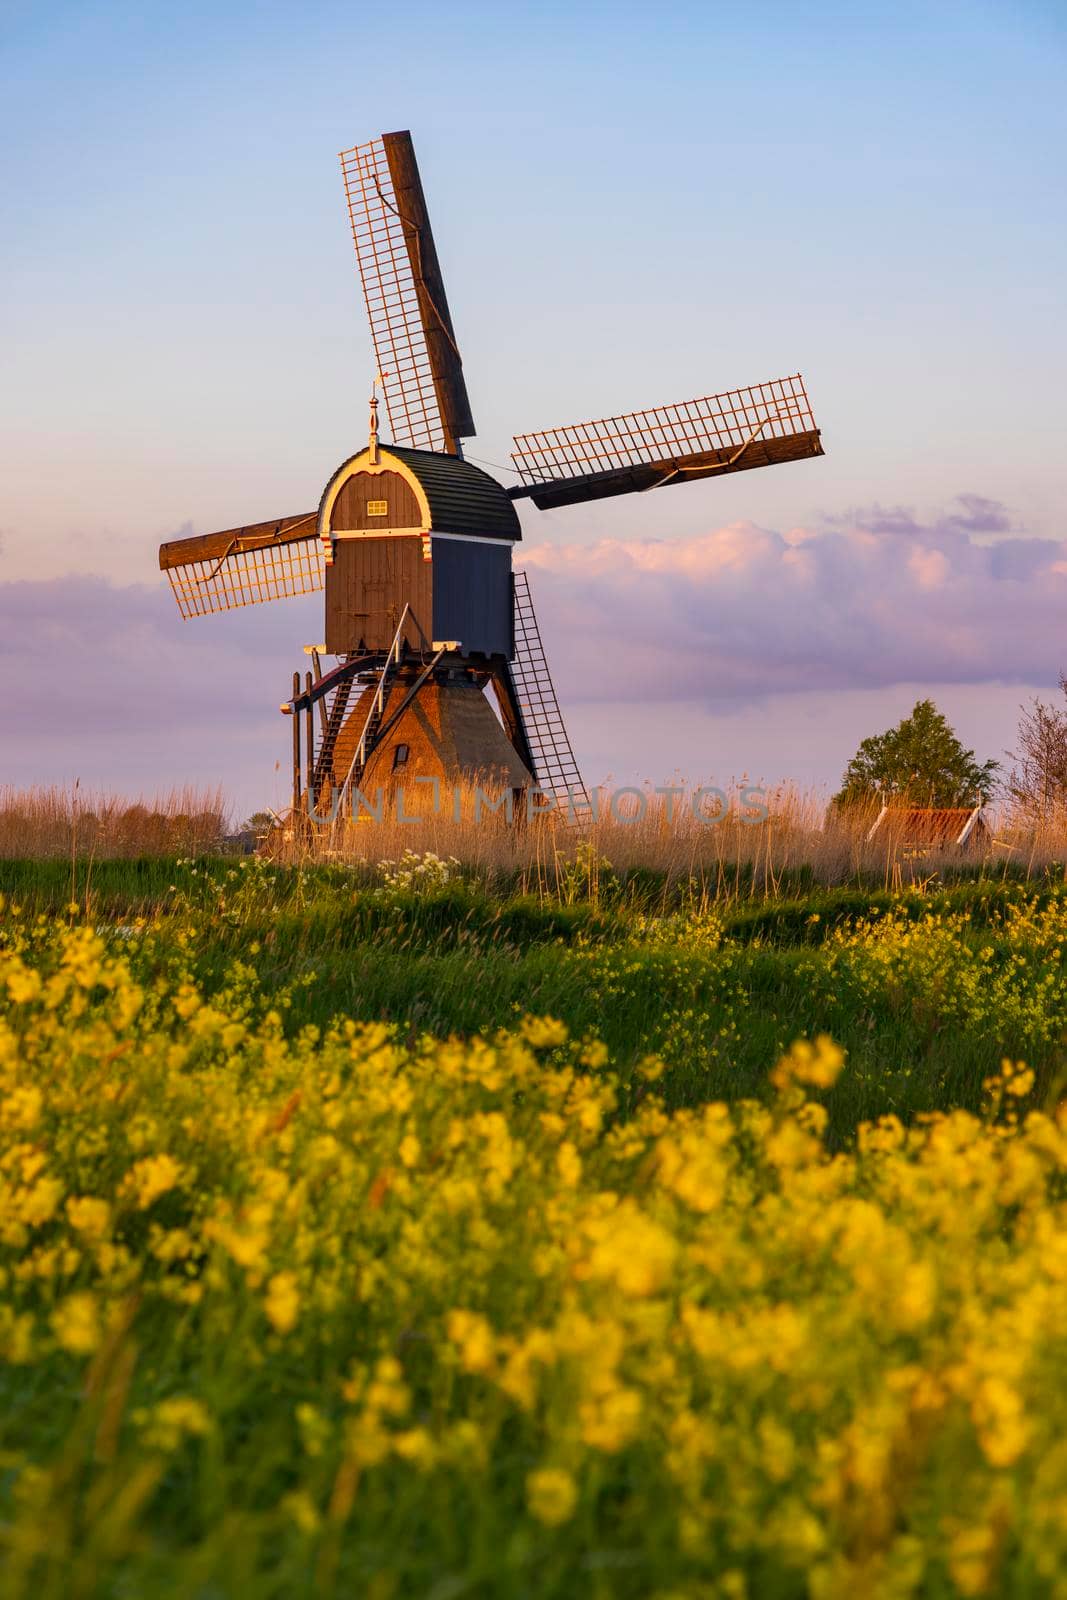 Windmill Broekmolen, Molenlanden - Nieuwpoort, The Netherlands by phbcz